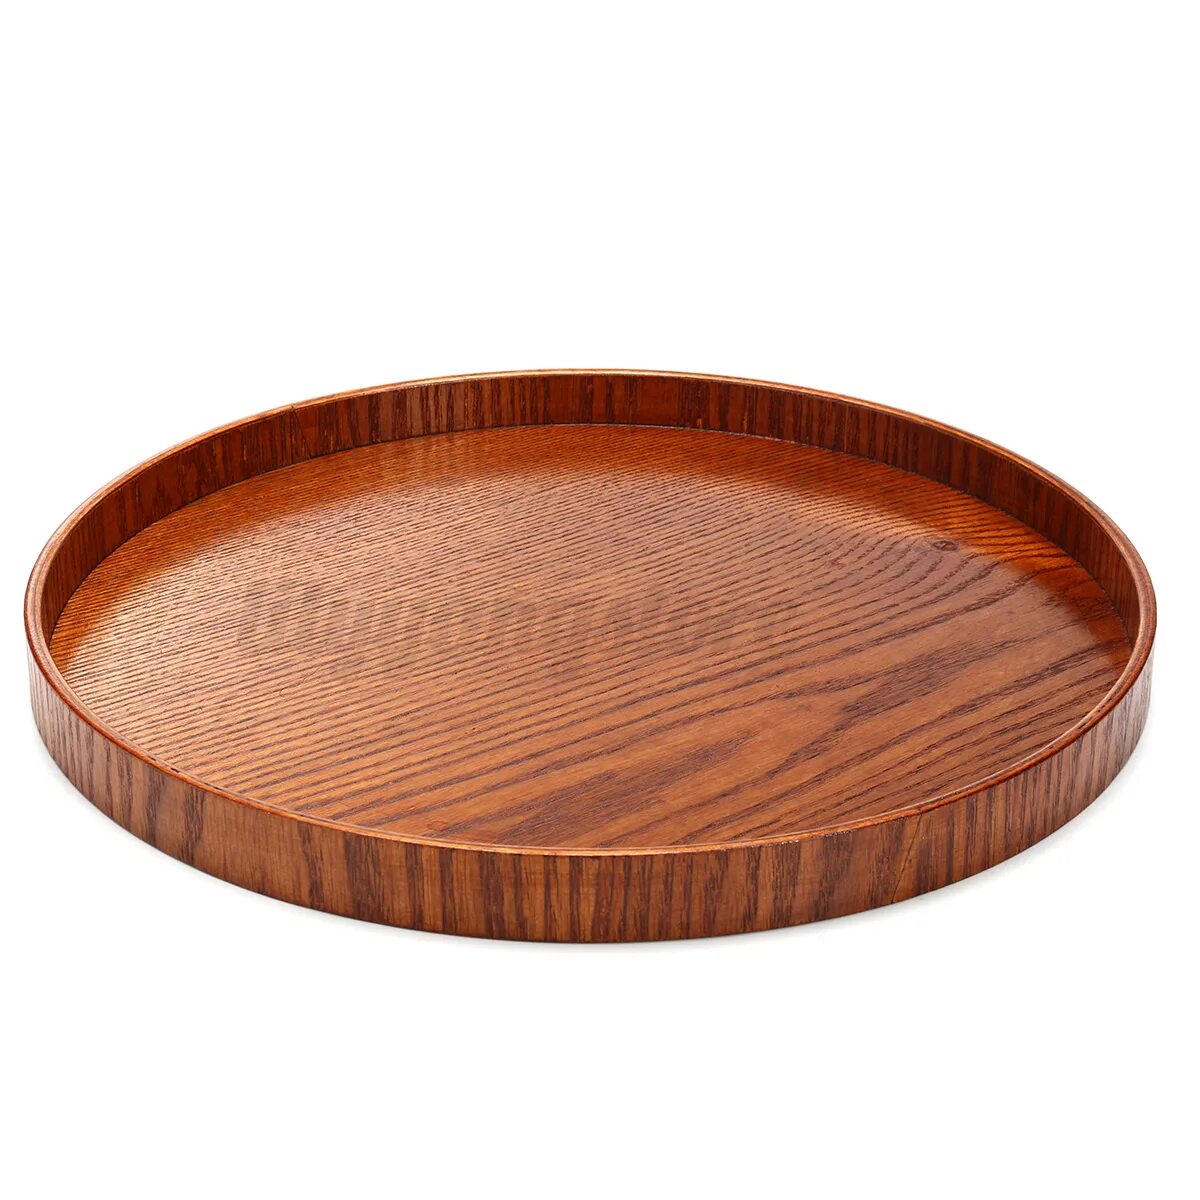 Поднос сверху. Wooden Plate. Round Wood Tray. Упаковка Wooden Tray 1000*3000.